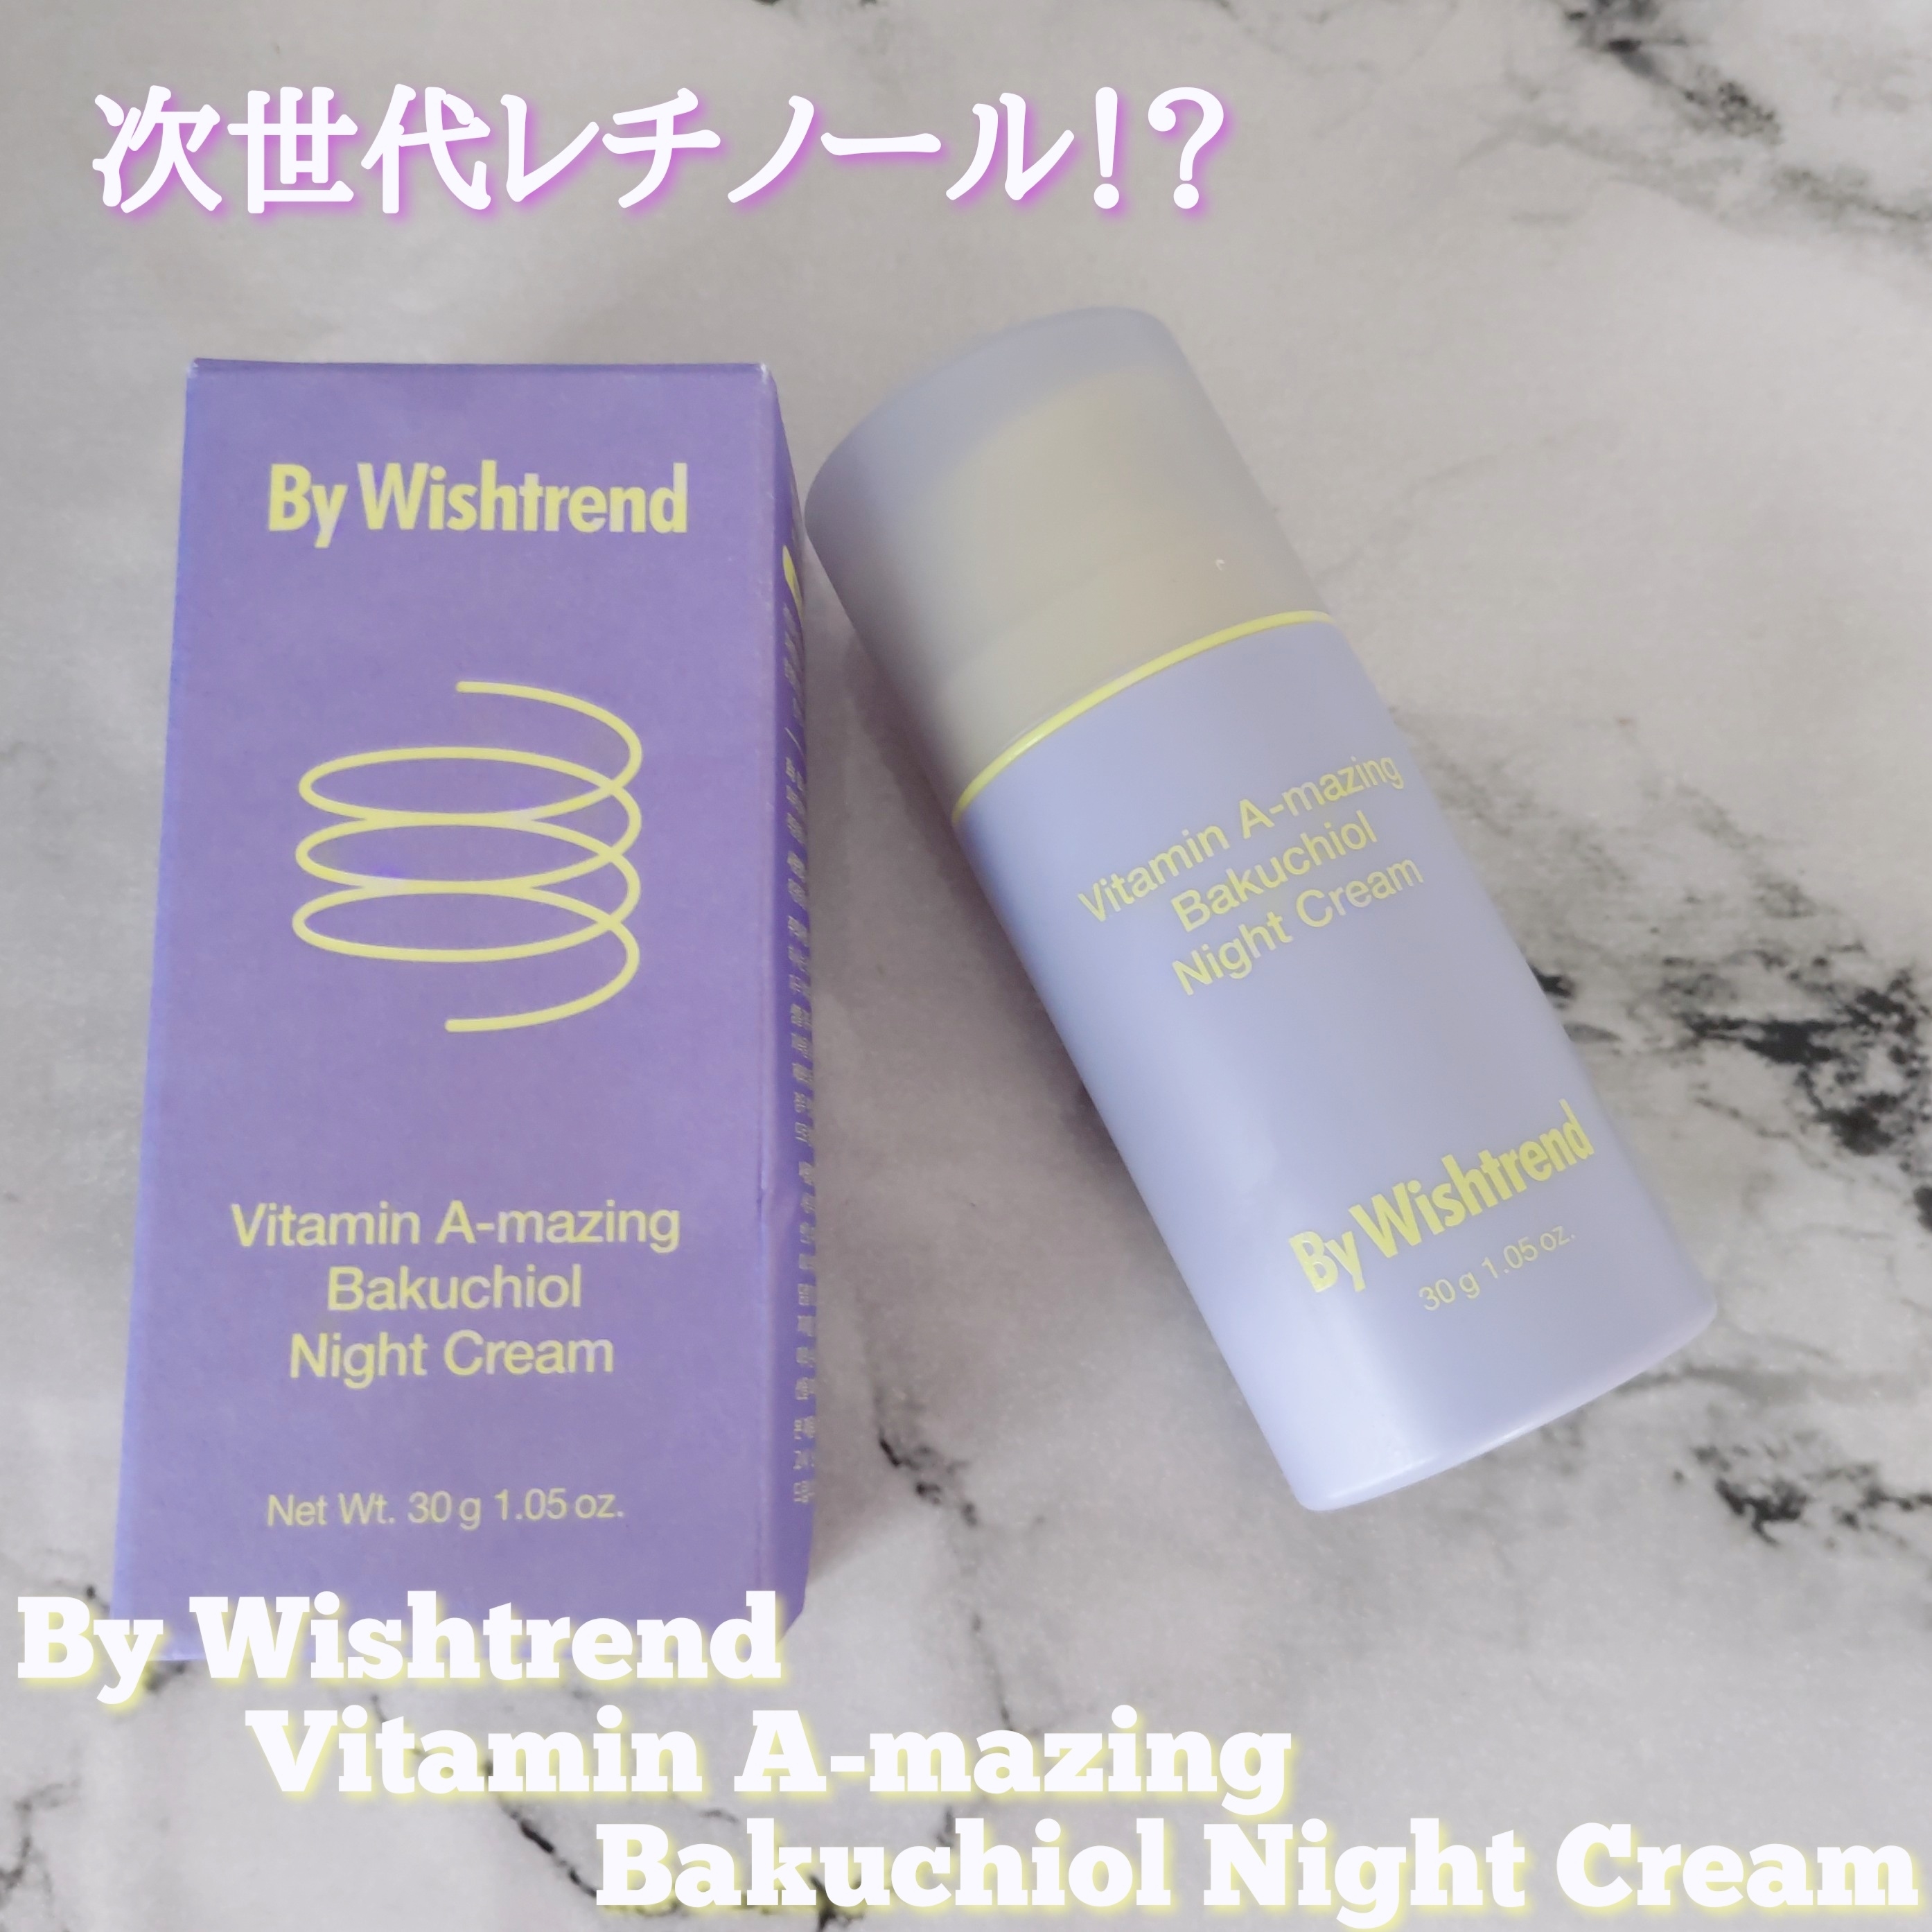 By Wishtrend ビタミンA-mazing バクチオール ナイトクリームを使ったYuKaRi♡さんのクチコミ画像1